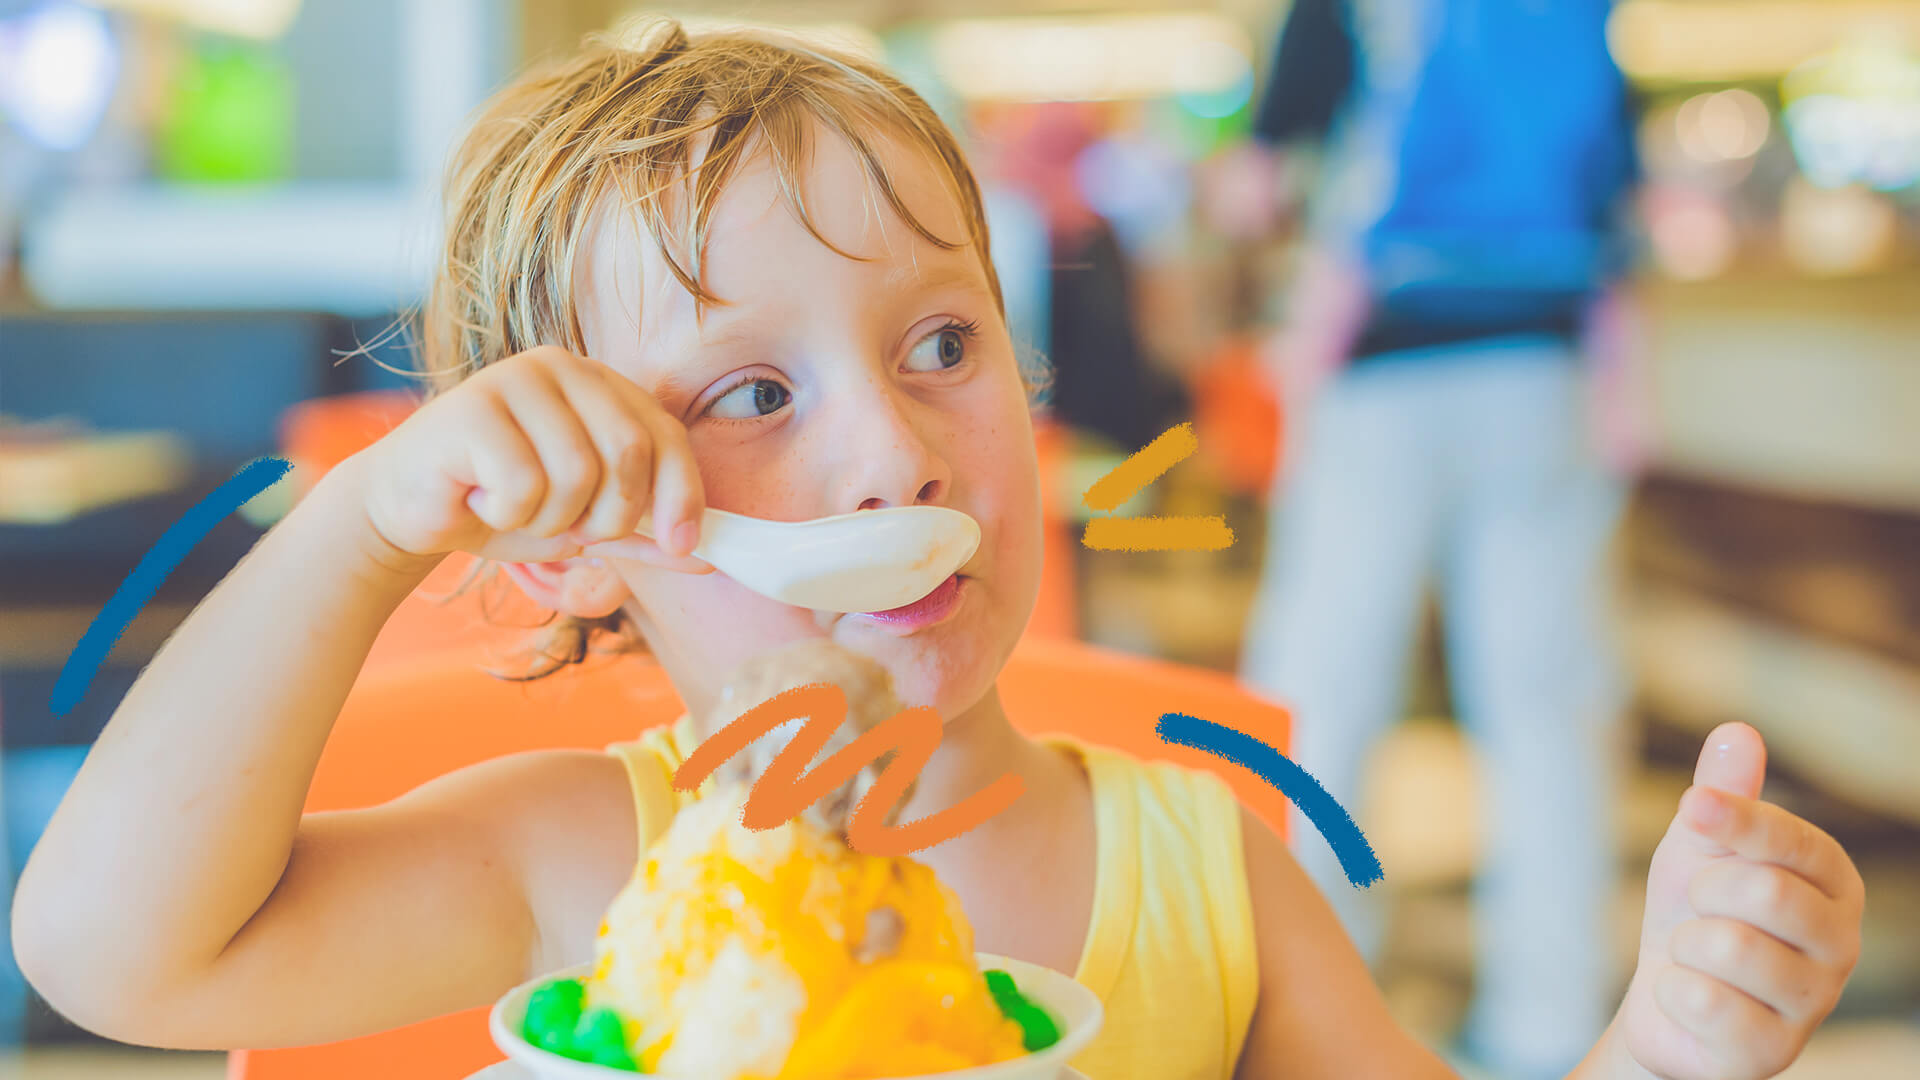 Creme de manga: foto de um menino loiro, branco e de olhos azuis que come uma sobremesa de creme de manga com uma colher.